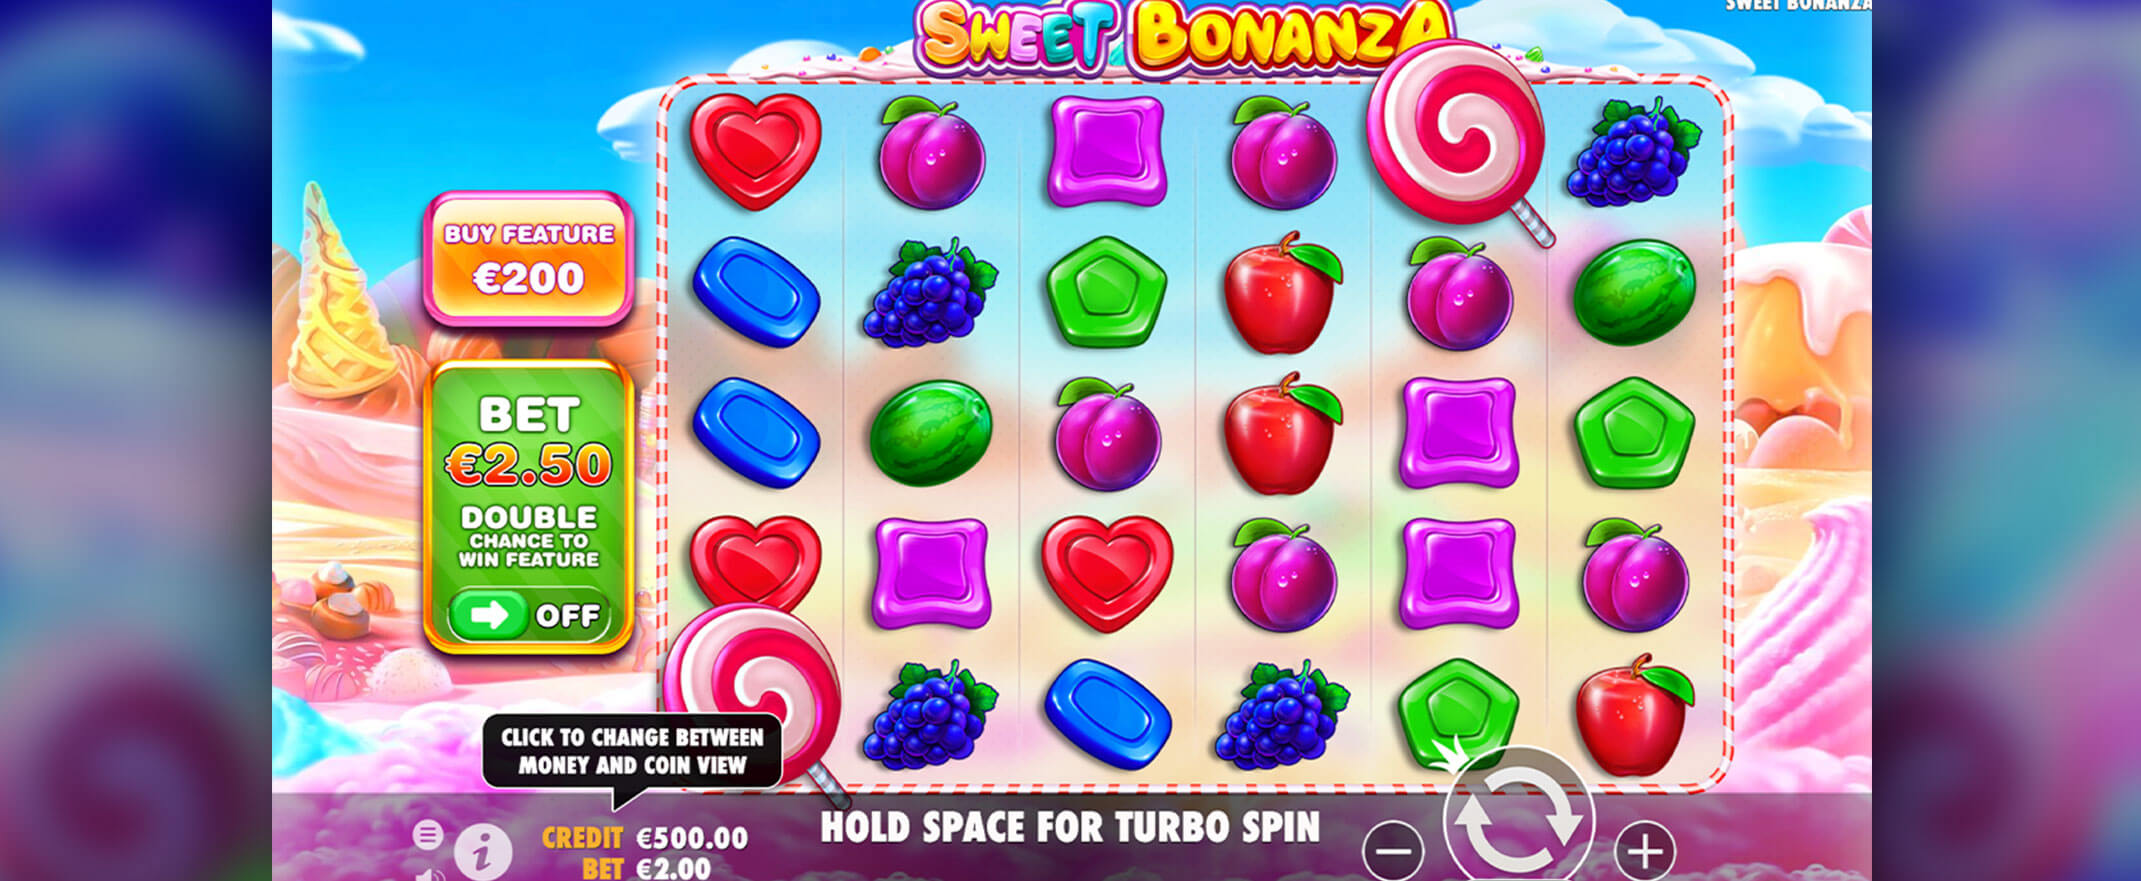 Sweet Bonanza Spielautomat von Pragmatic Play